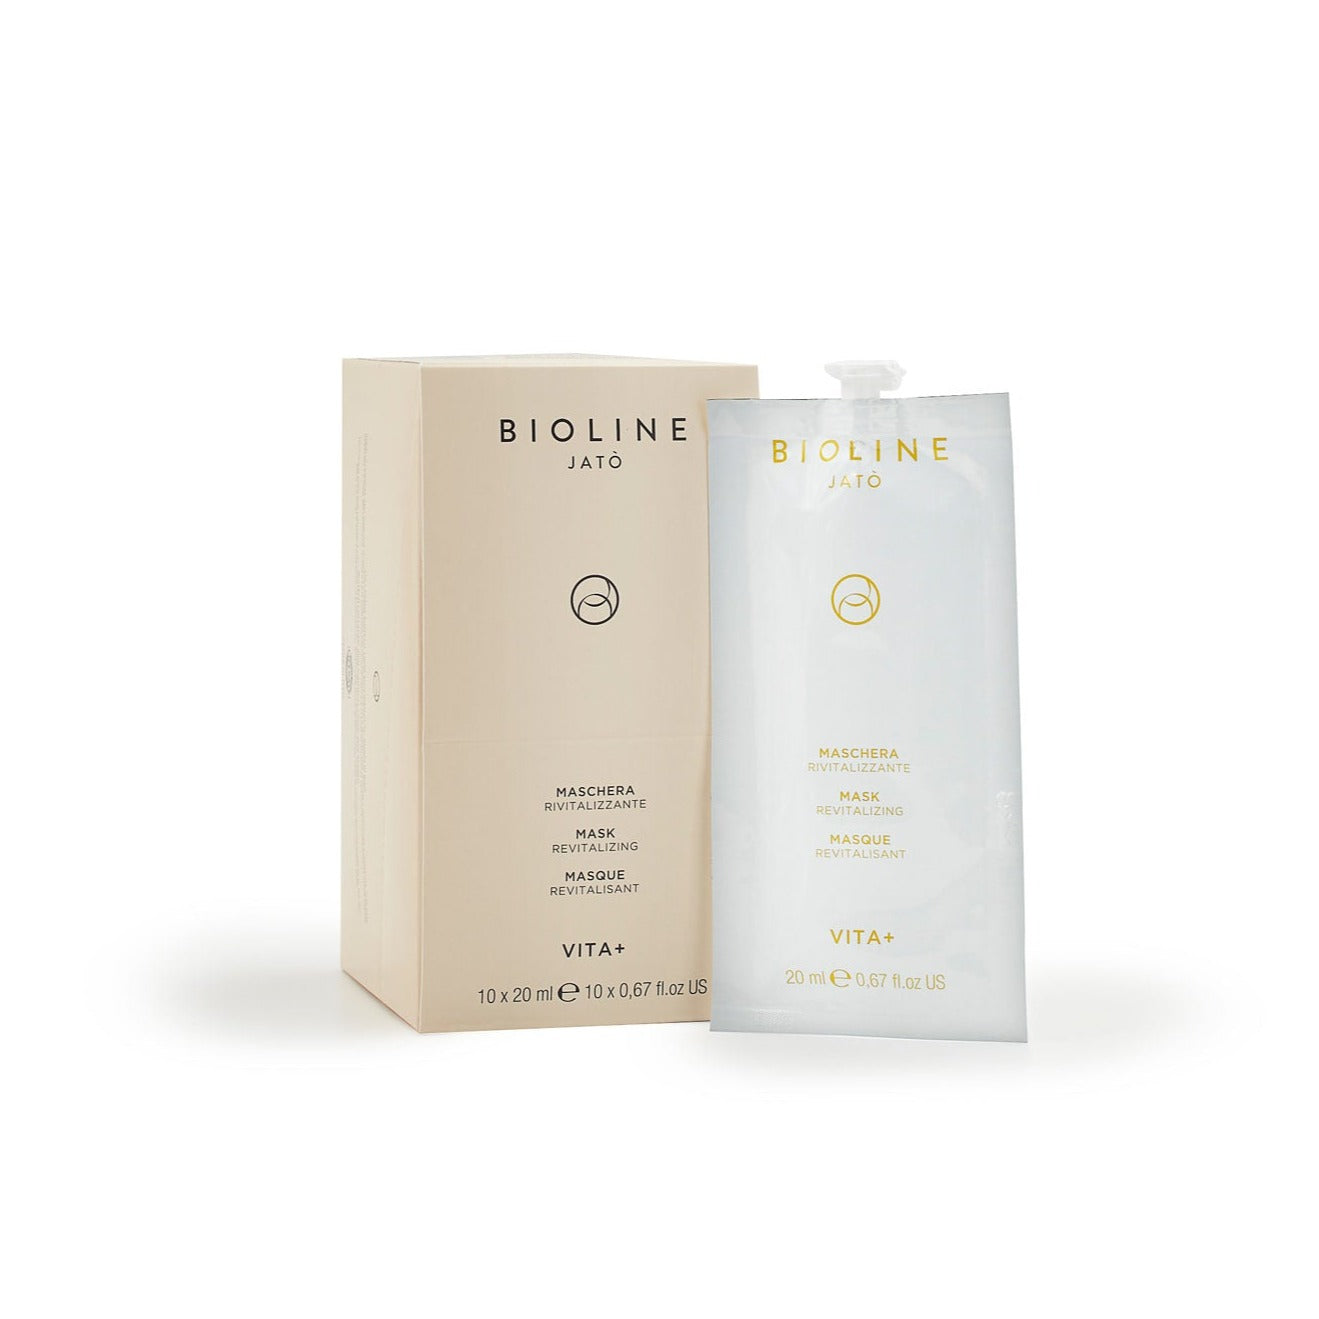 Från Bioline Jató, Vita+. Närande mask med återställande och vitaliserande egenskaper för oljelös, torr och devitaliserad hud. Återställer hudens näring och elasticitet.